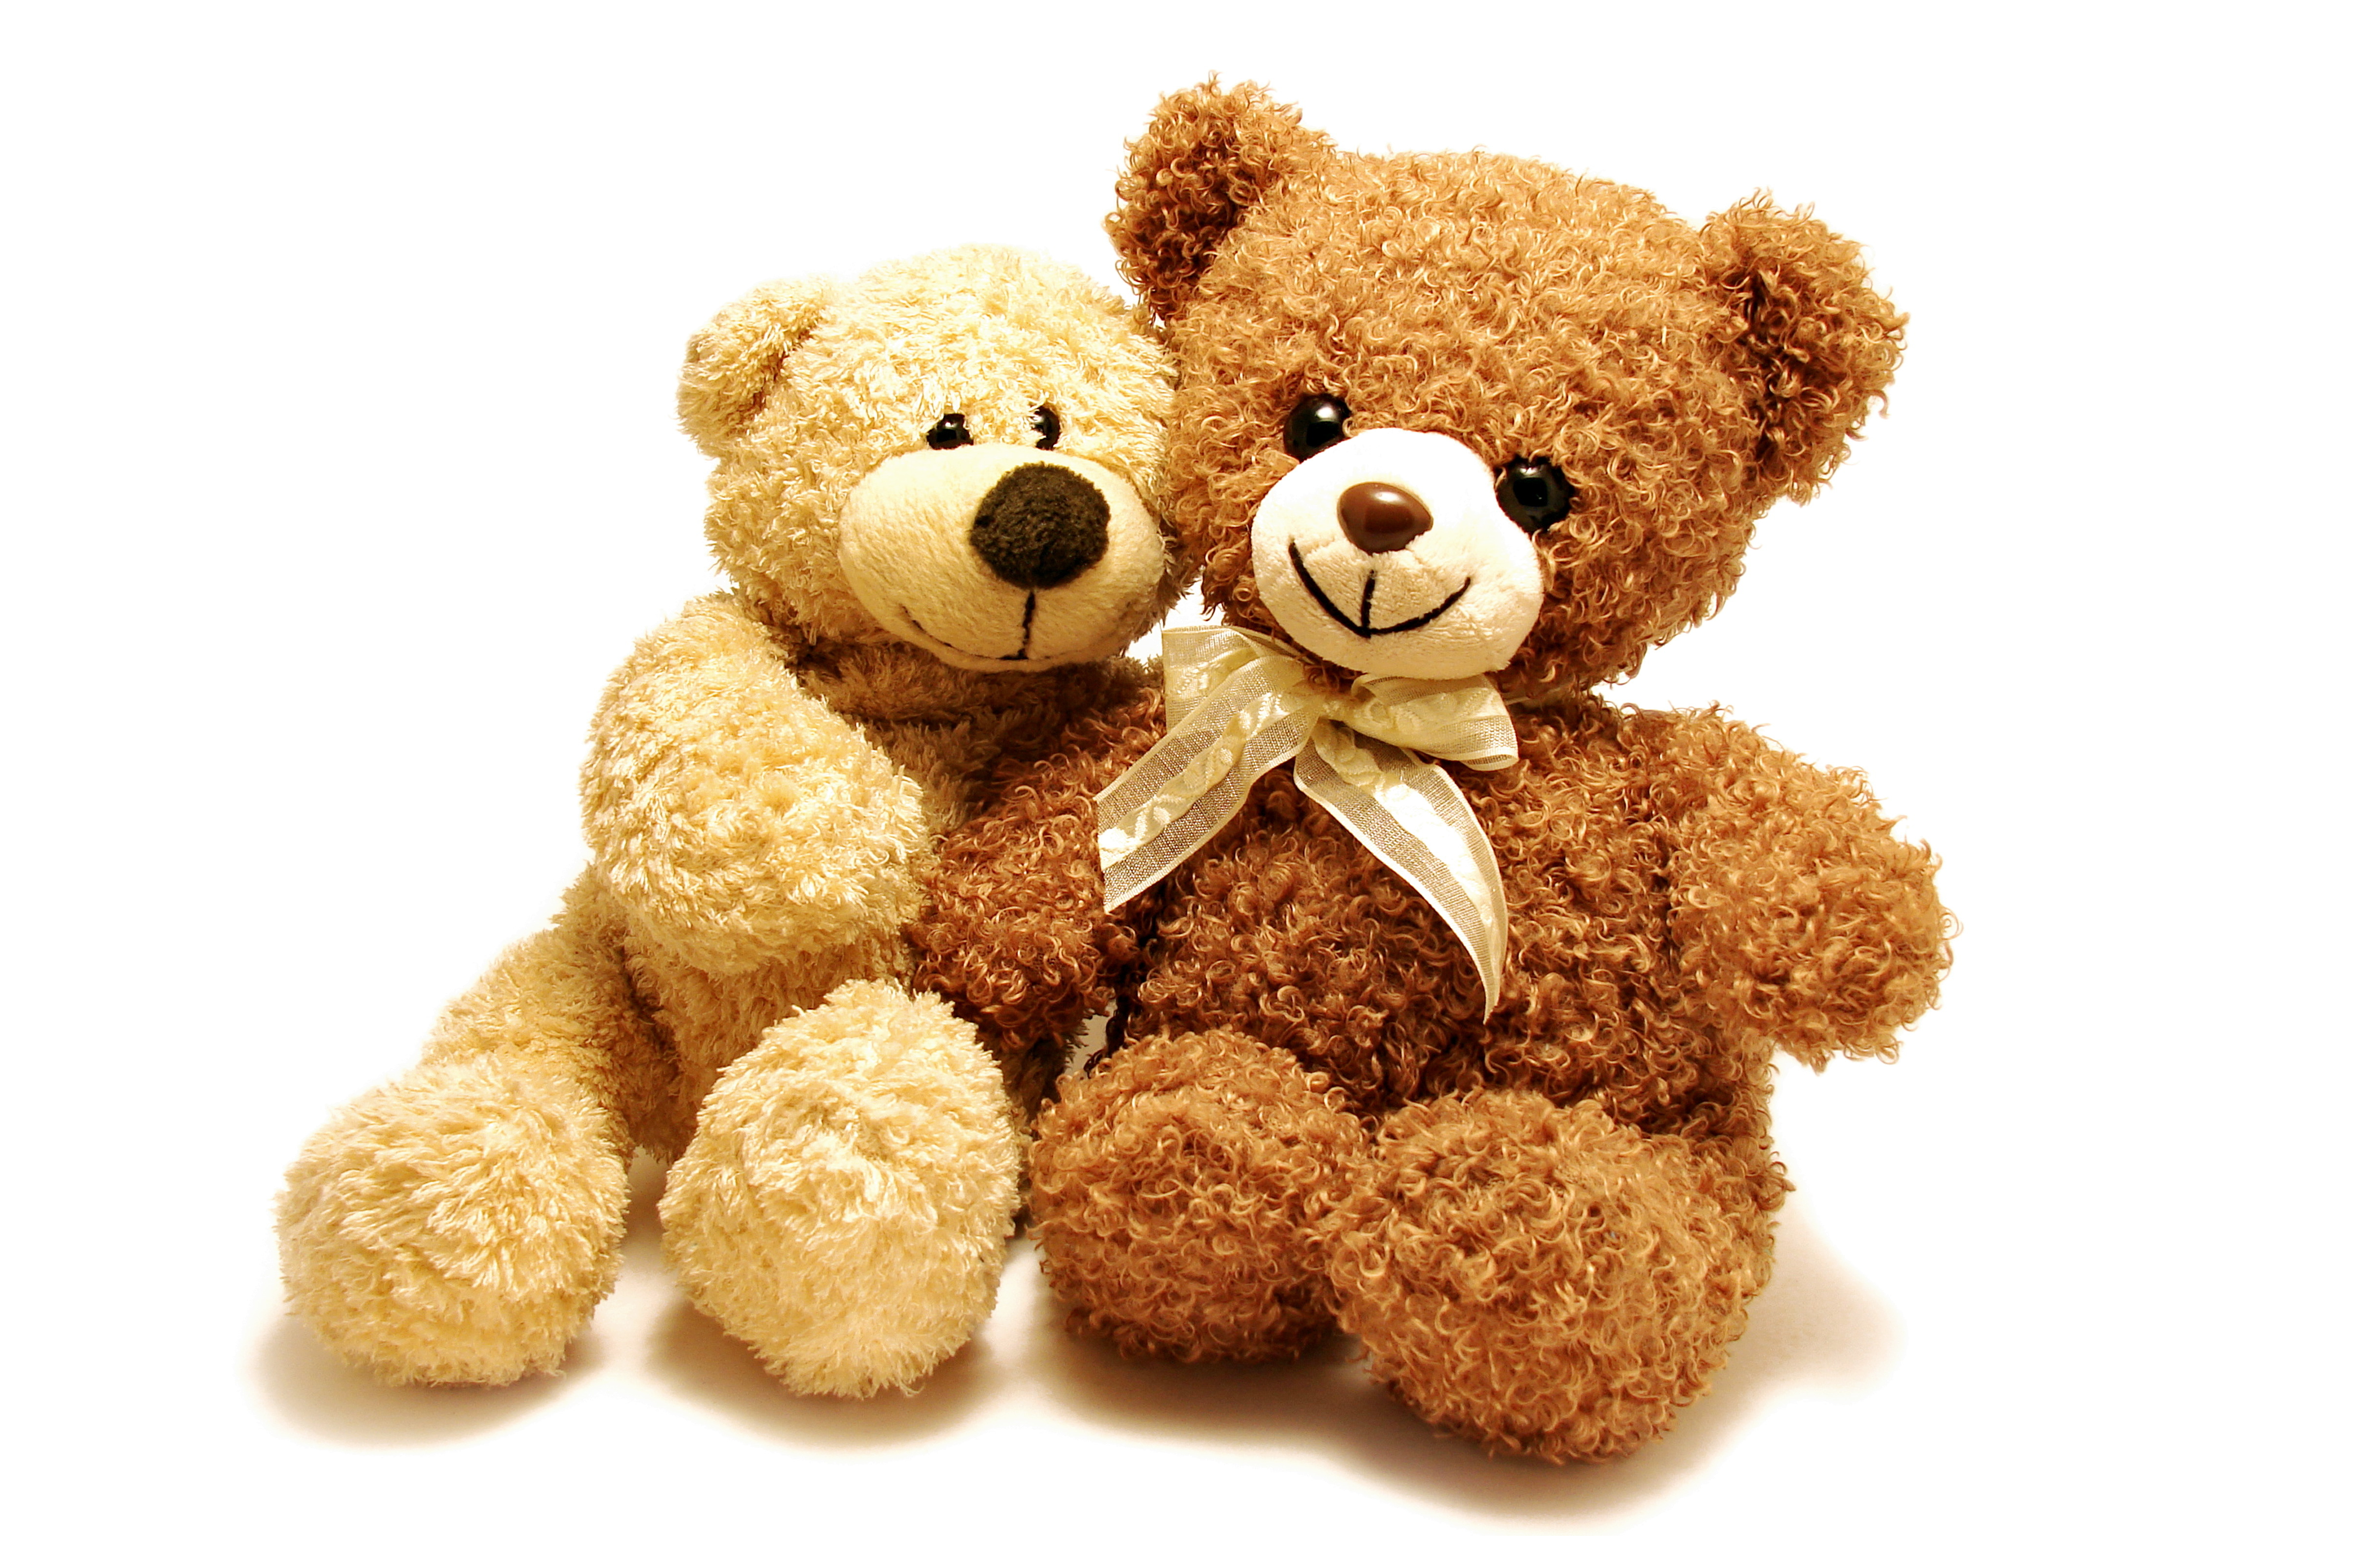 teddy bear wallpaper hd,stuffed toy,teddy bear,toy,plush,brown